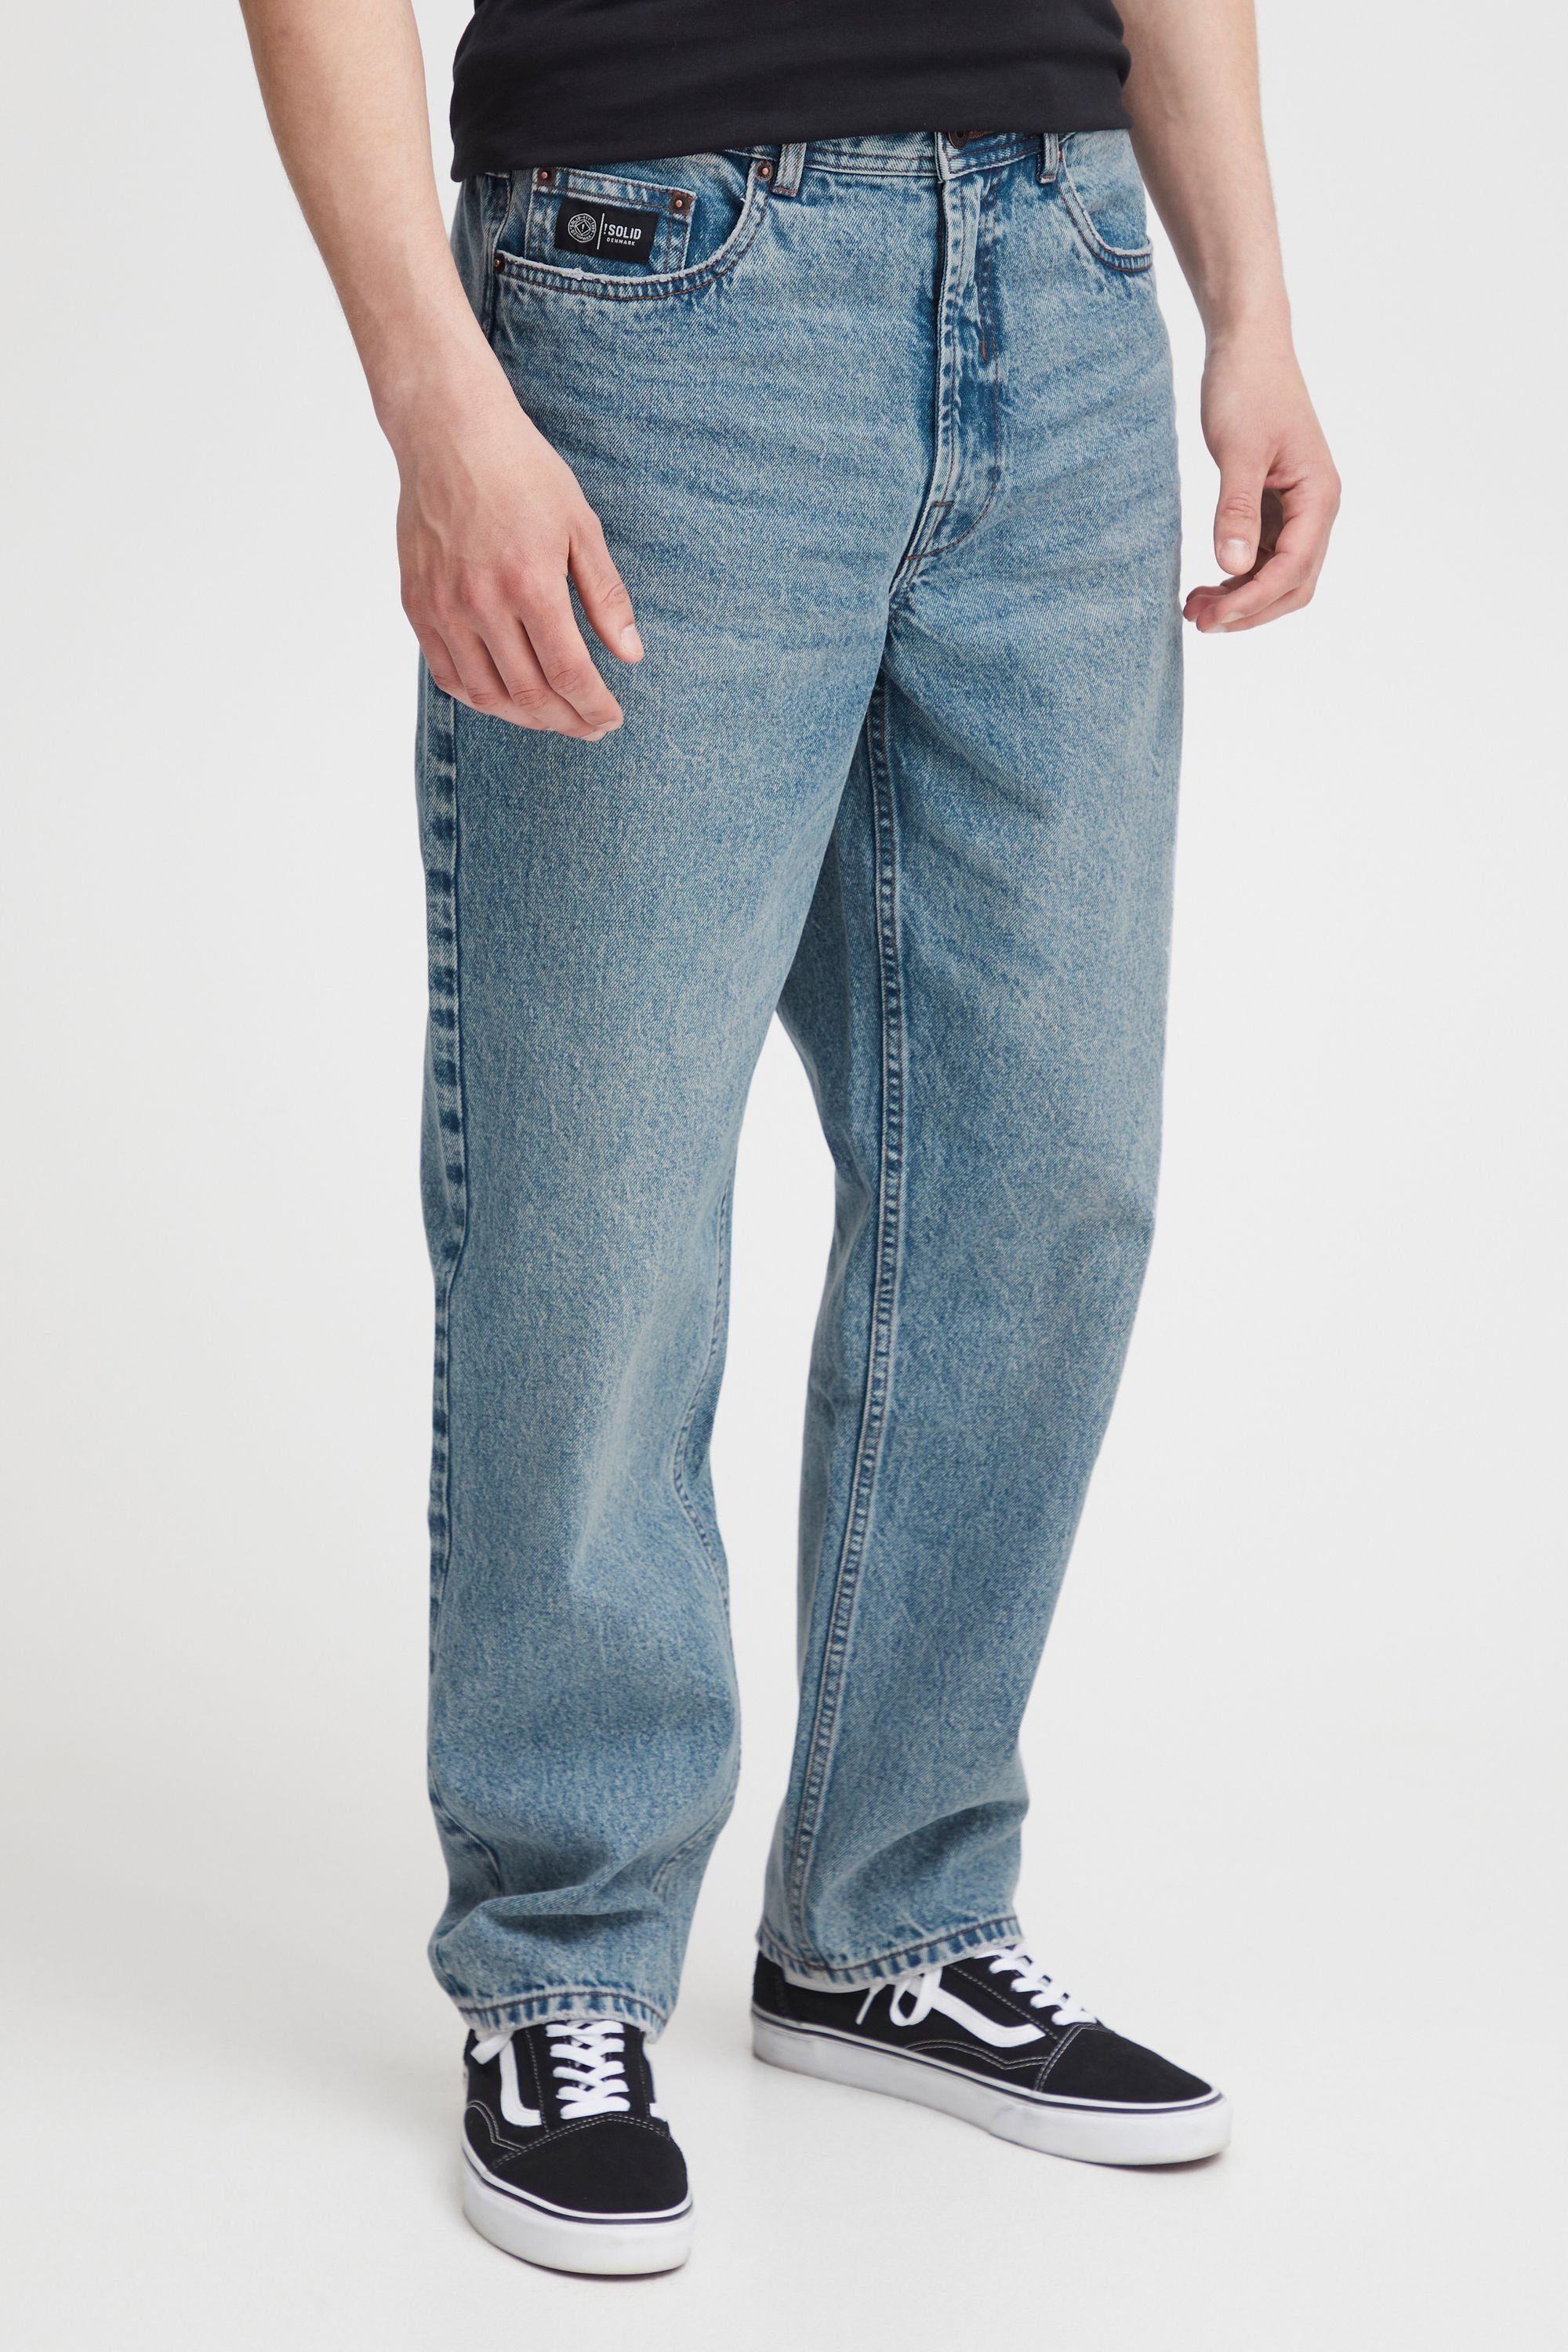 Solid 5-Pocket-Jeans SDHoffmann Middle (700030) Blue Vintage Denim